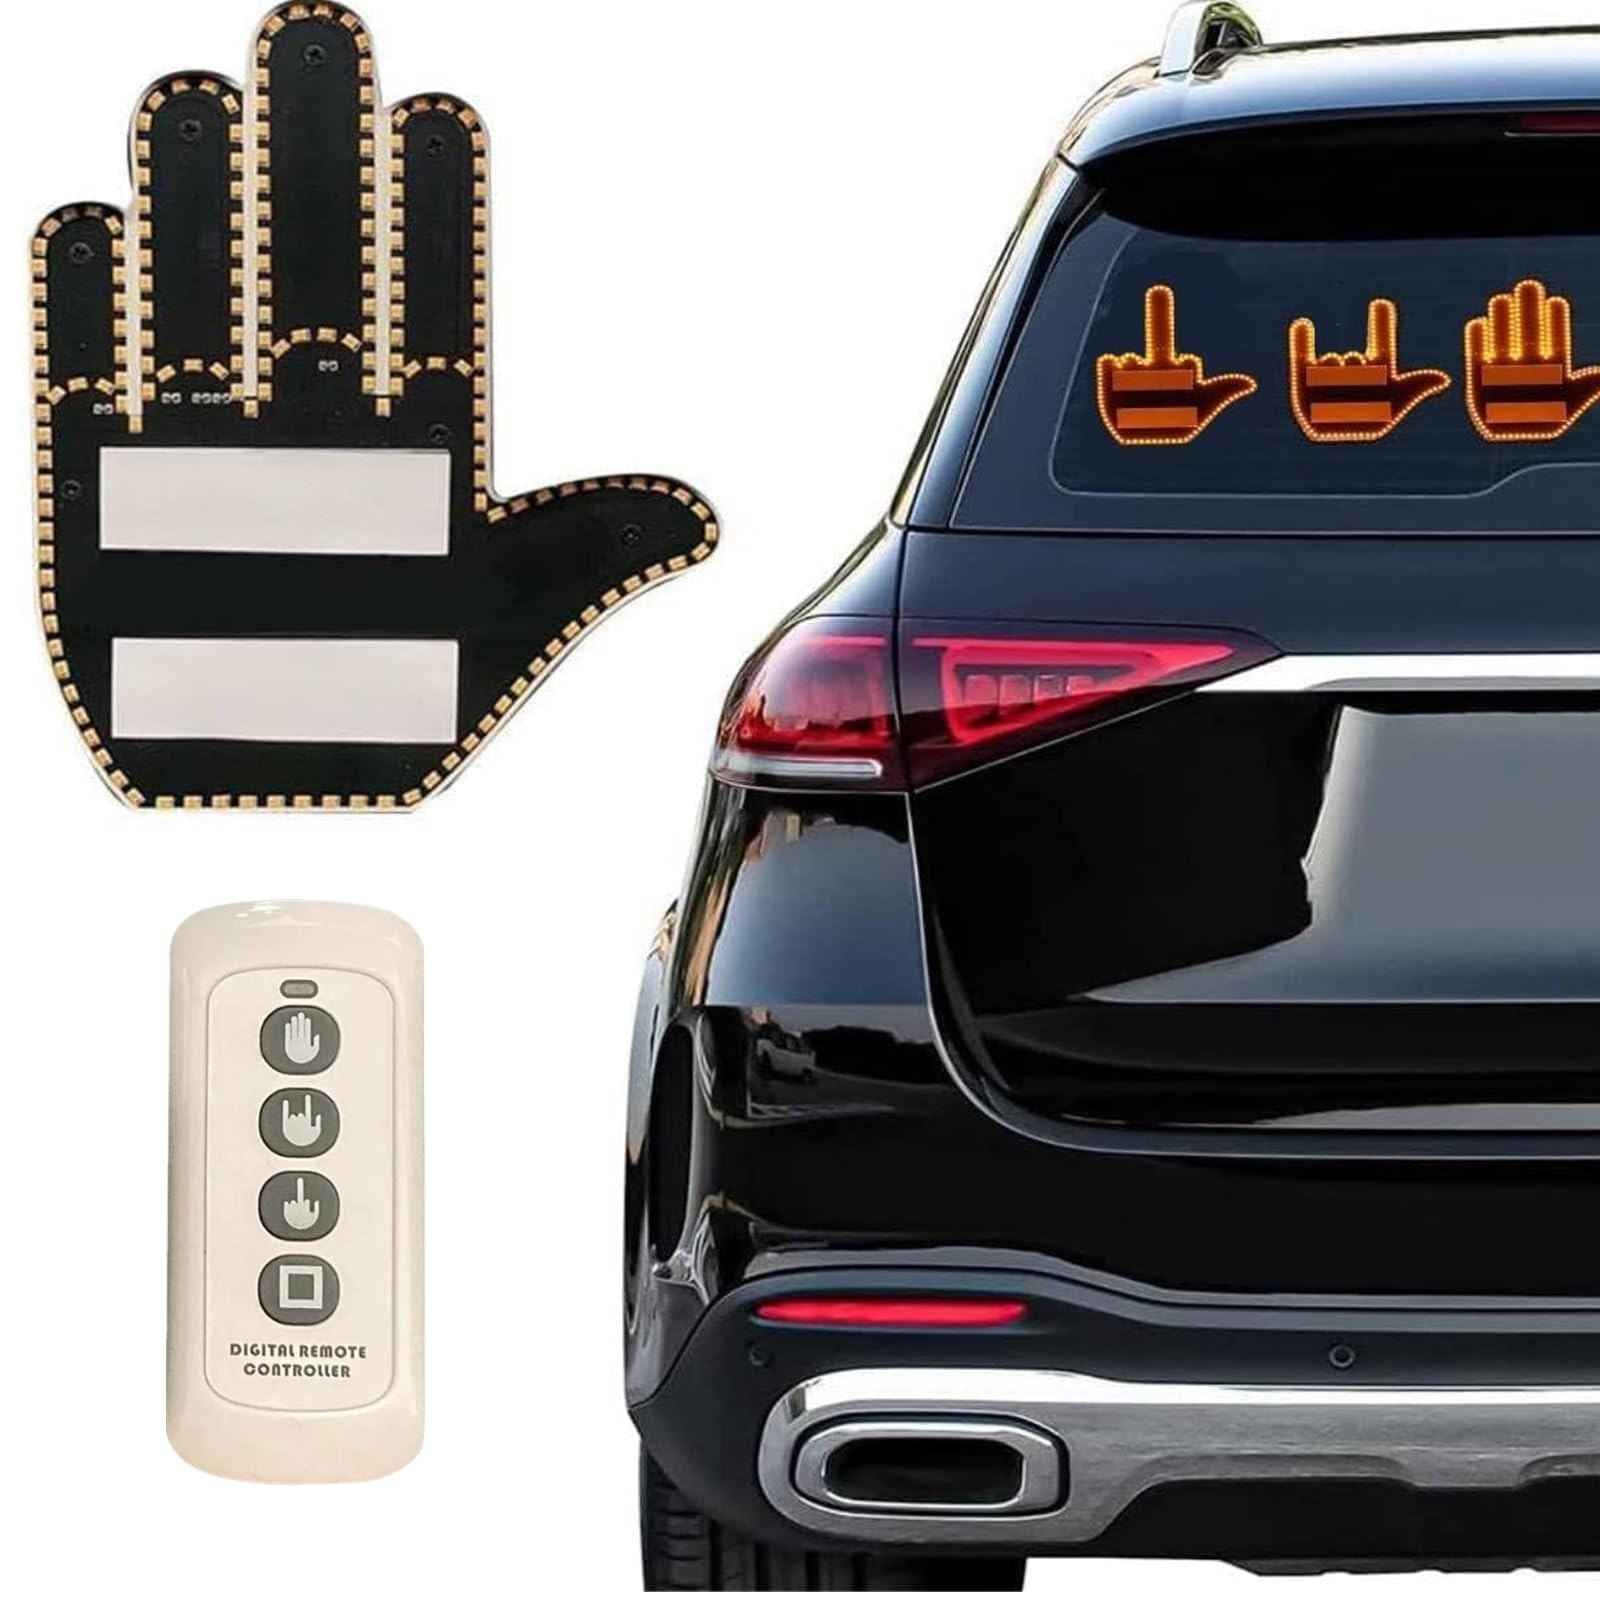 LED-Mittelfinger-Schild für Auto mit Fernbedienung, Autofenster-Fingerlicht, Cooles Auto-Innenlicht, Mittelfinger-Licht für Auto, Auto-LED-Licht und Road Rage-Schilder, Autozubehör für Männer (Multi) von JoyFan